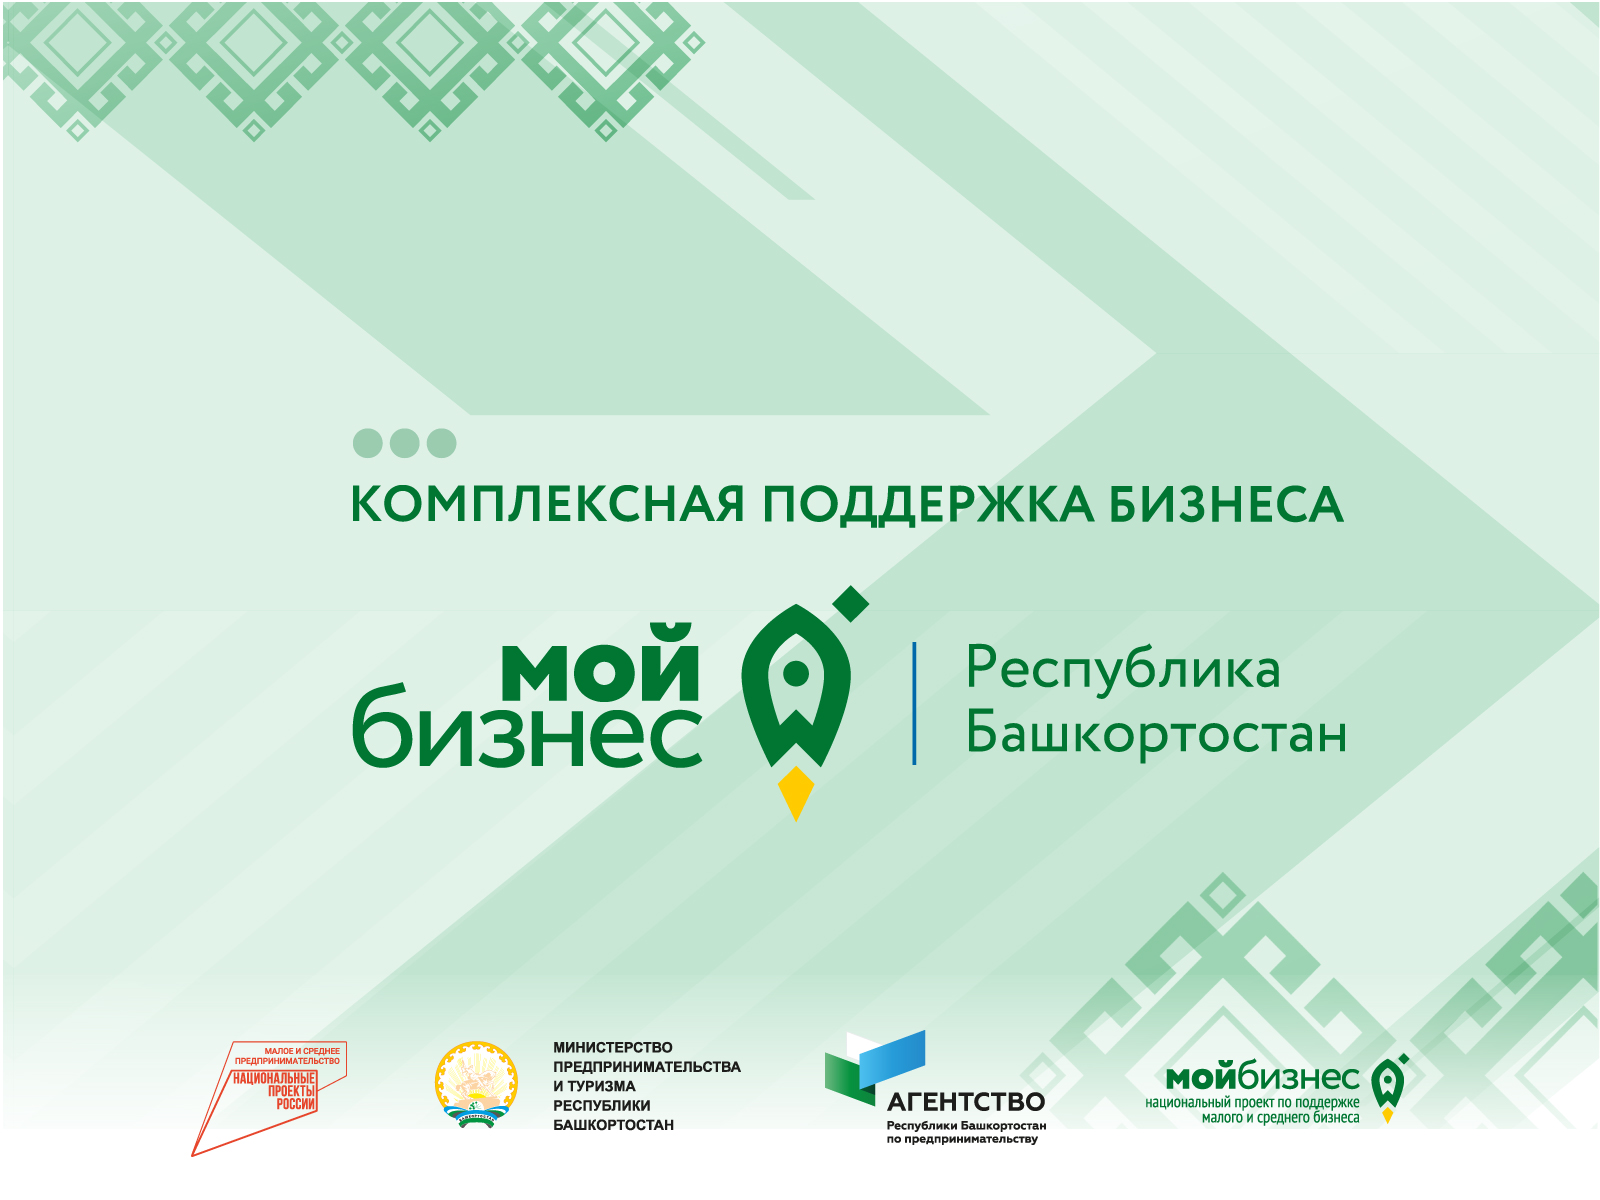  В Башкортостане выпустили буклеты для предпринимателей